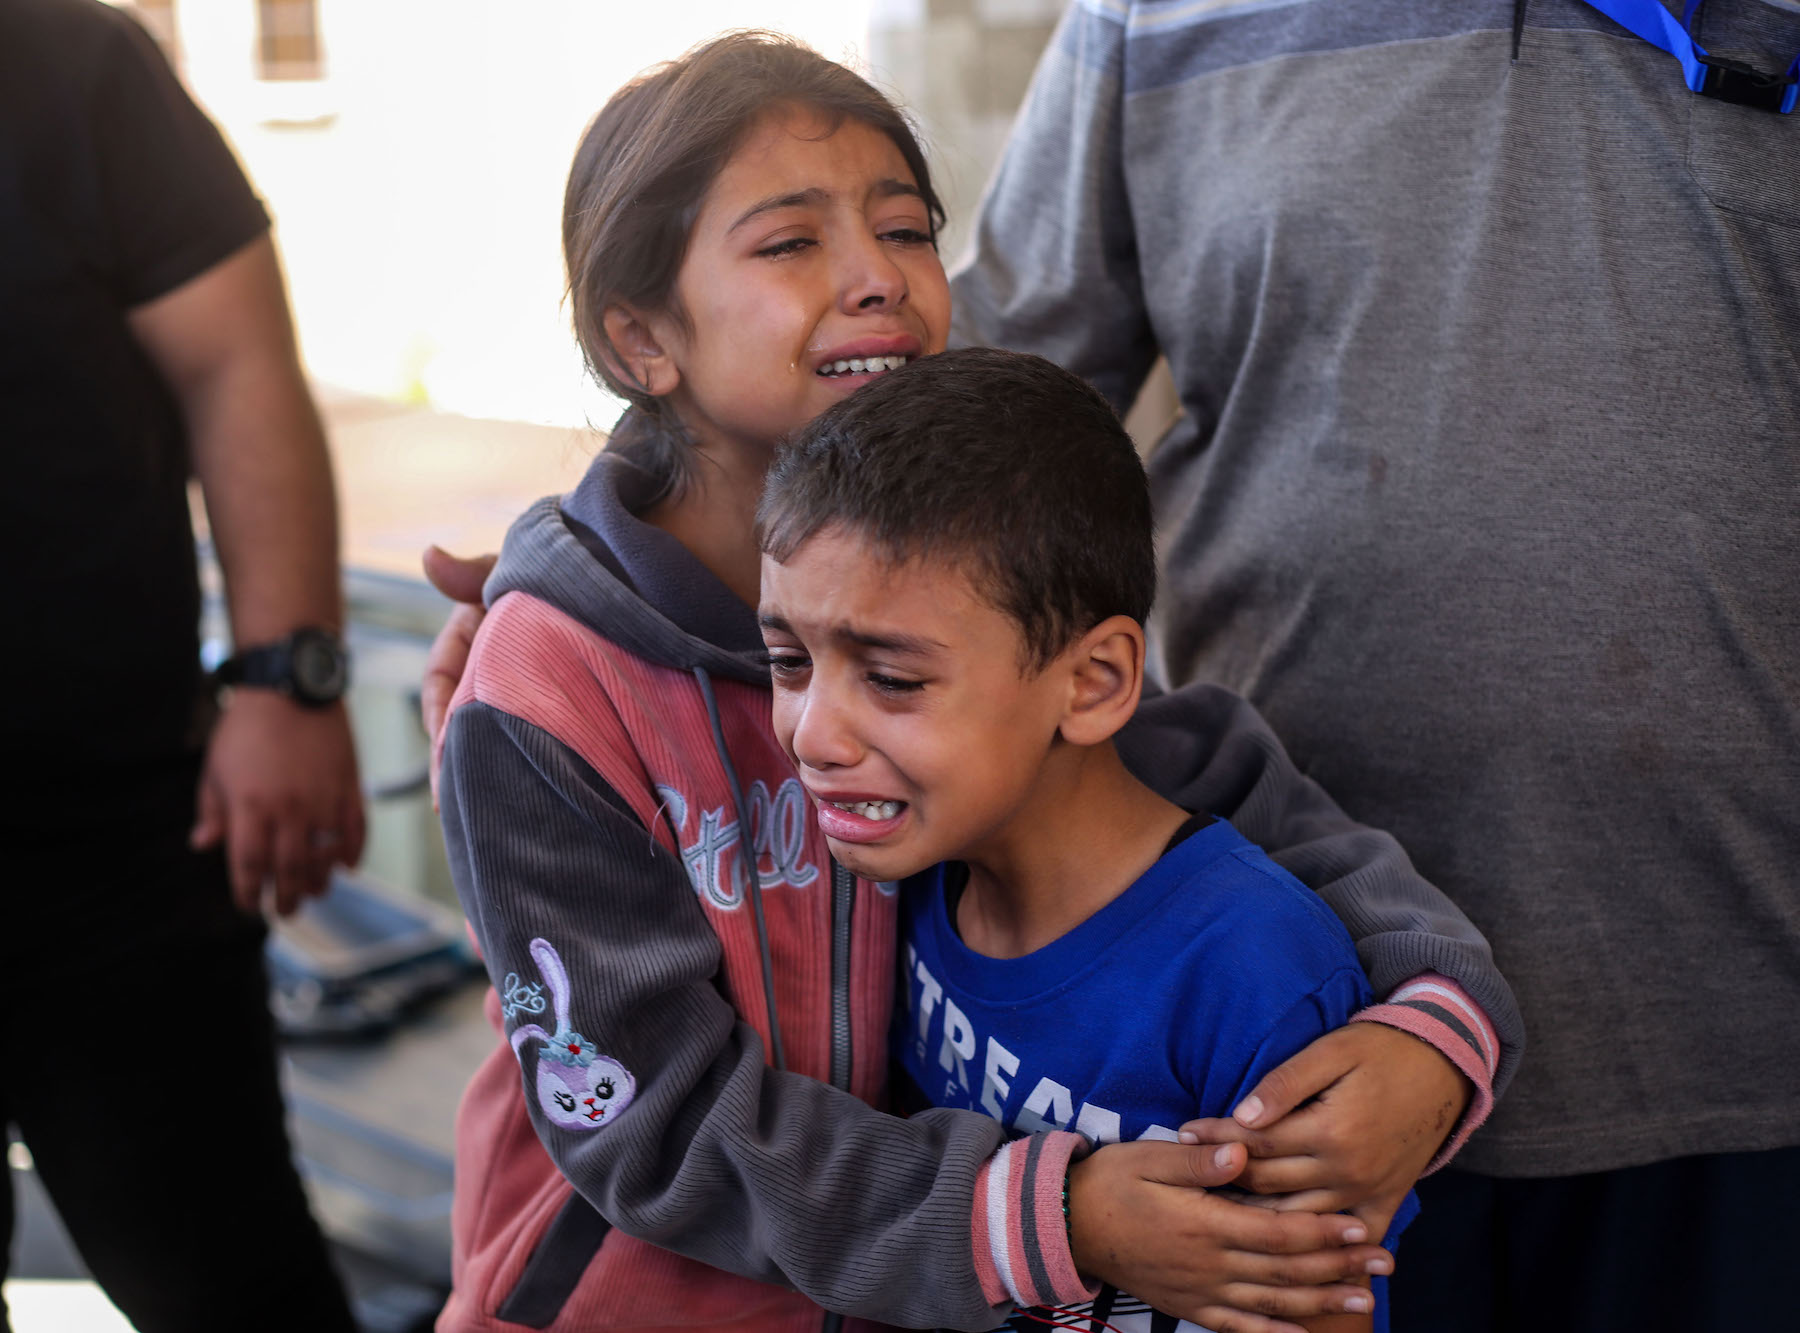 palestine israel air strikes gaza children